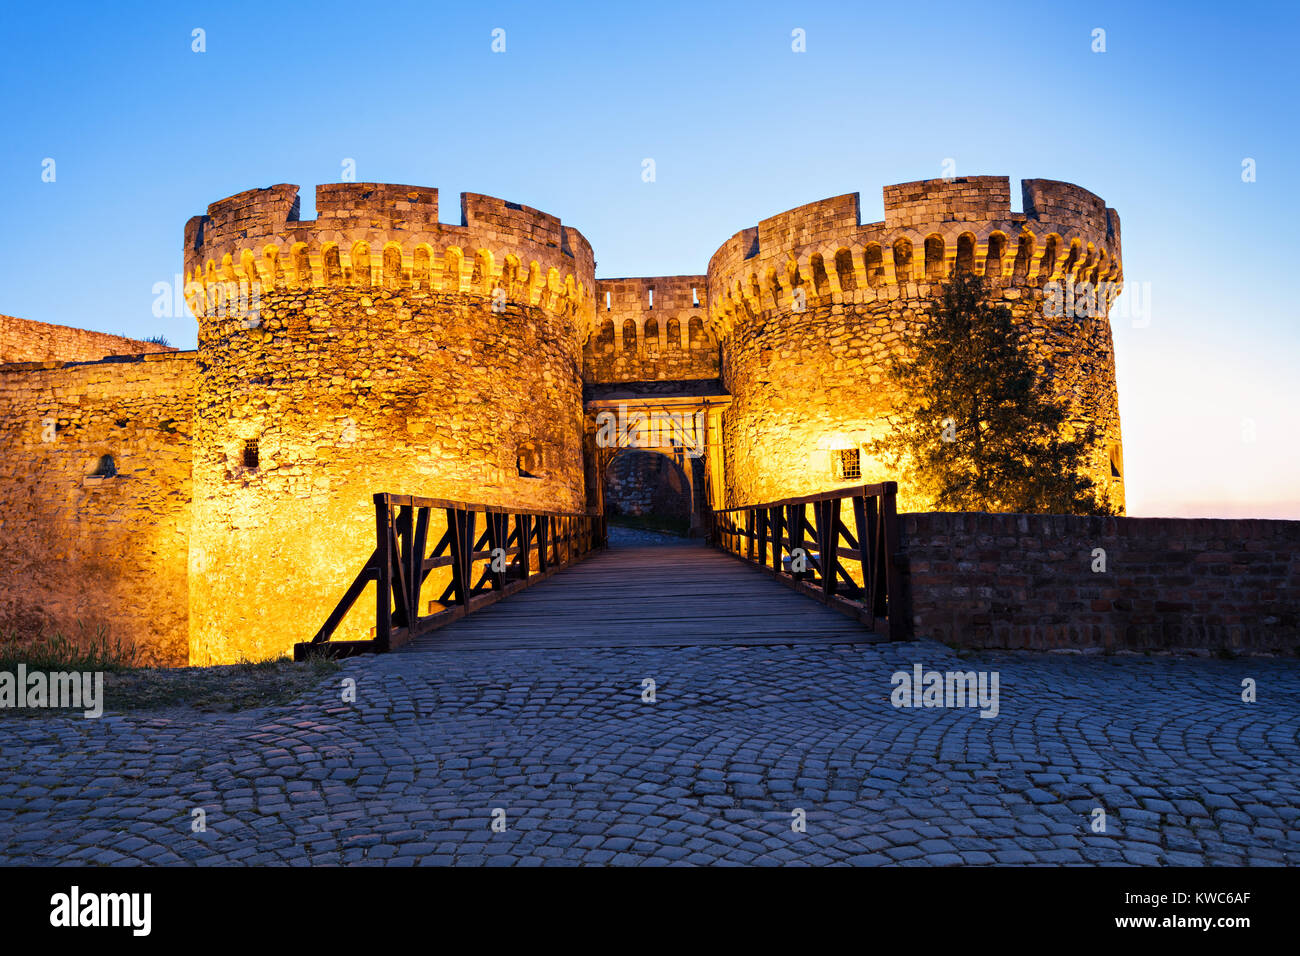 Kalemegdan Fortress in Stari Grad, Belgrade, Srbia Stock Photo